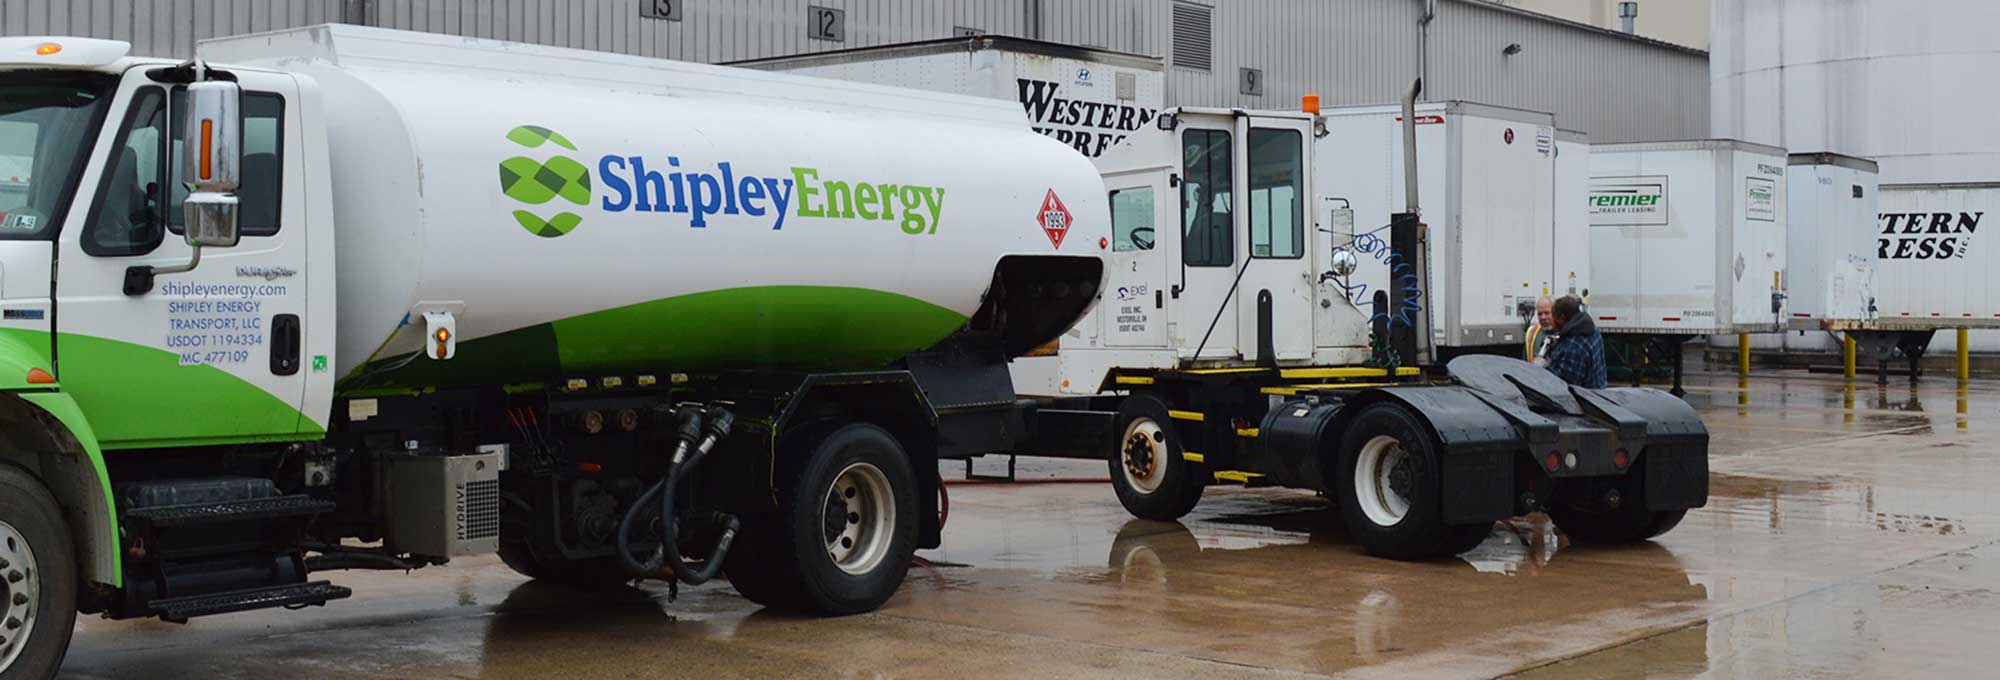 shipley energy fleet fueling